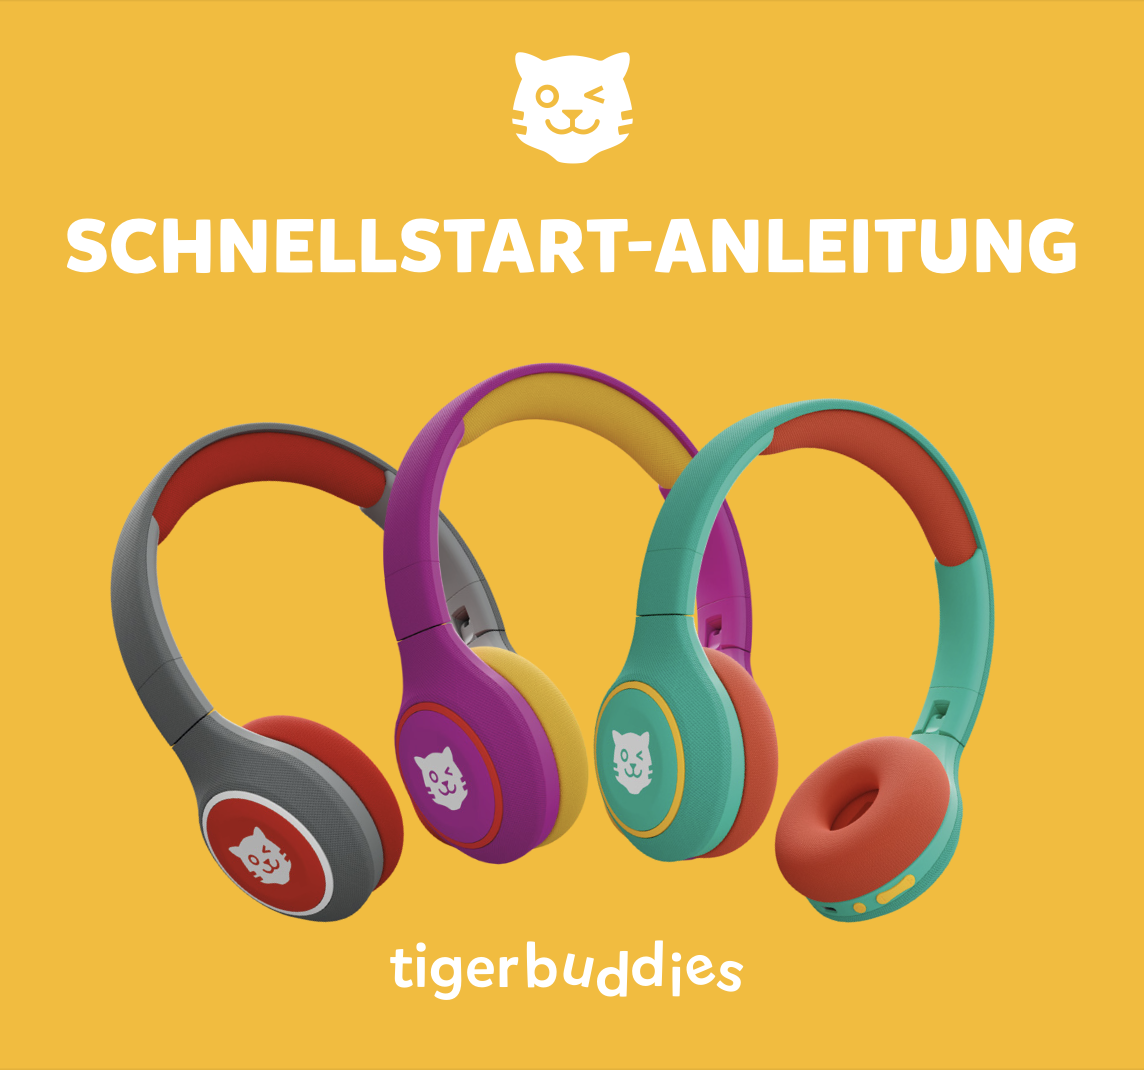 Schnellstart-Anleitung_tigerbuddies.png